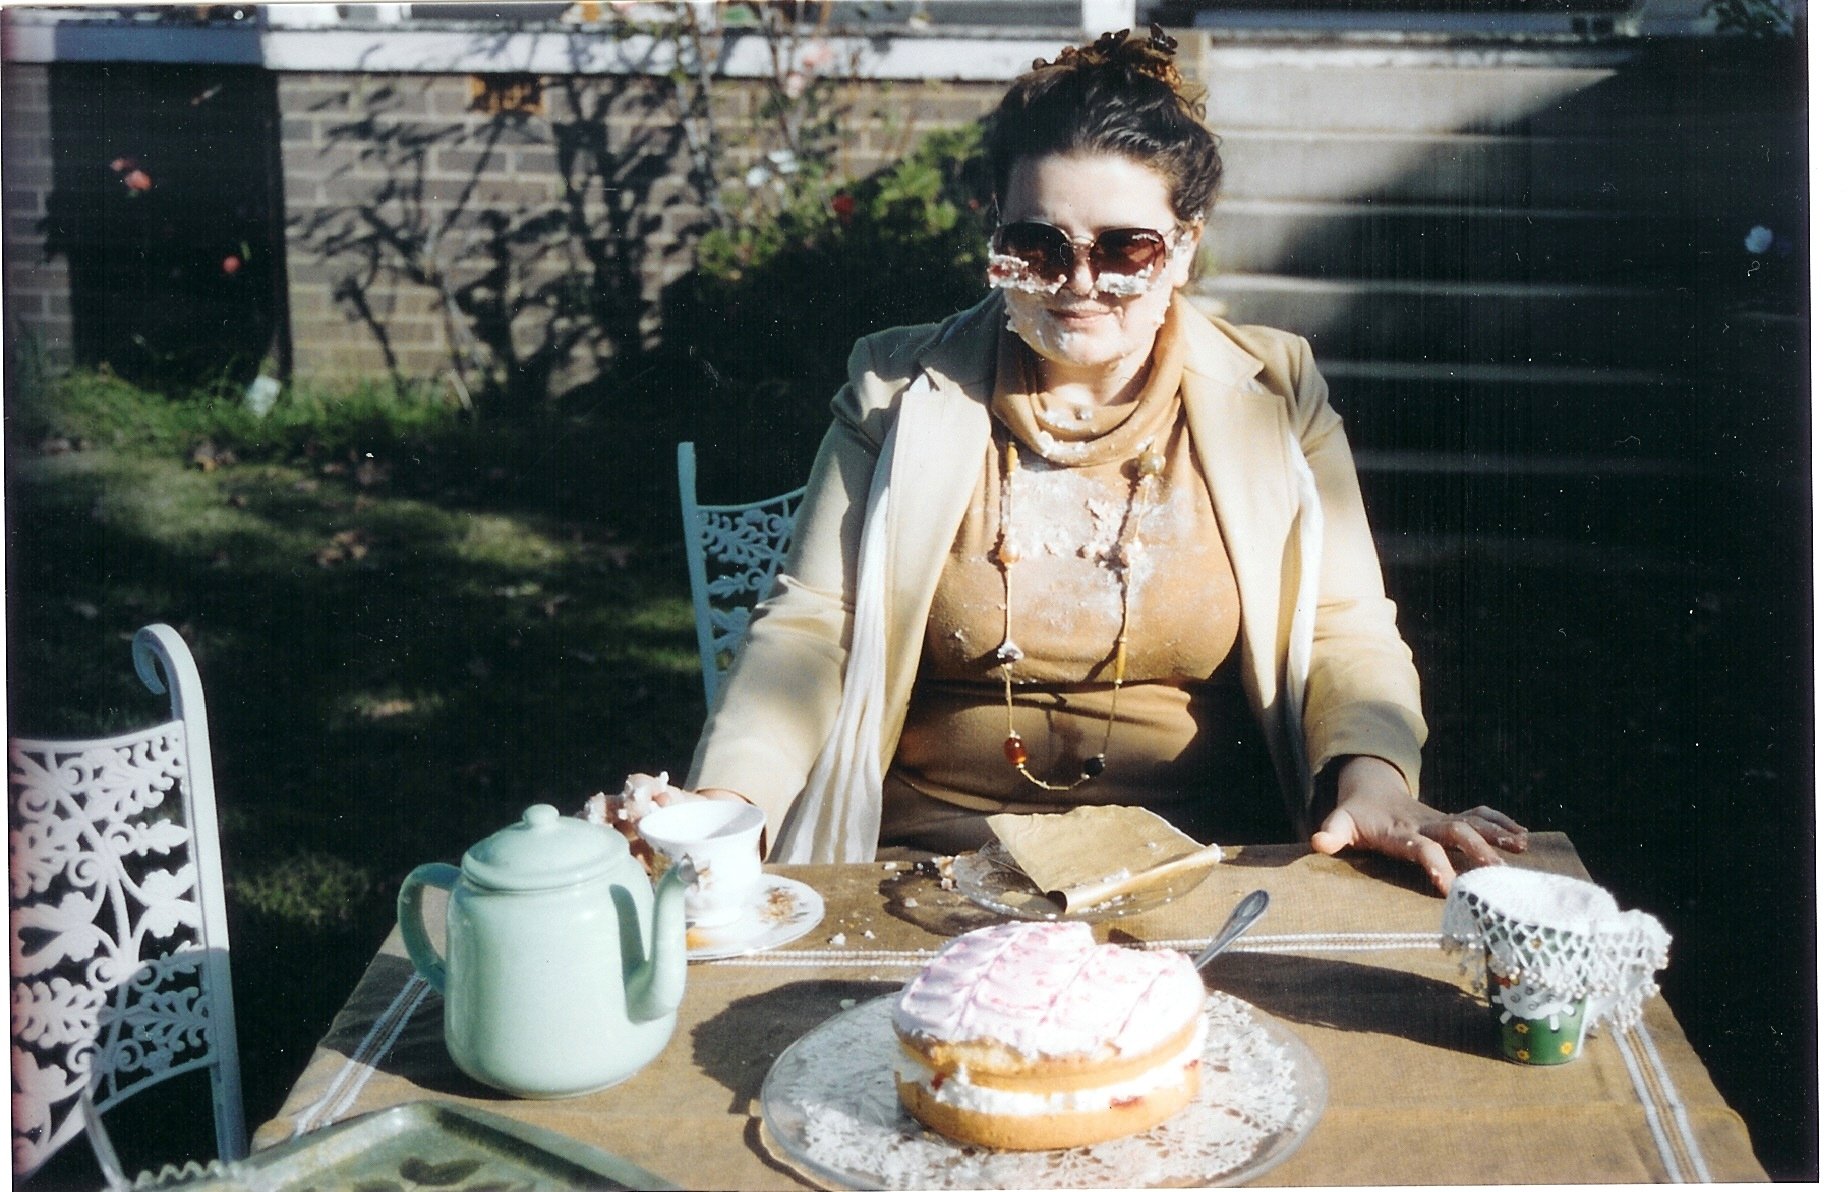 Cathy Hunt in Beige Brown (2005)